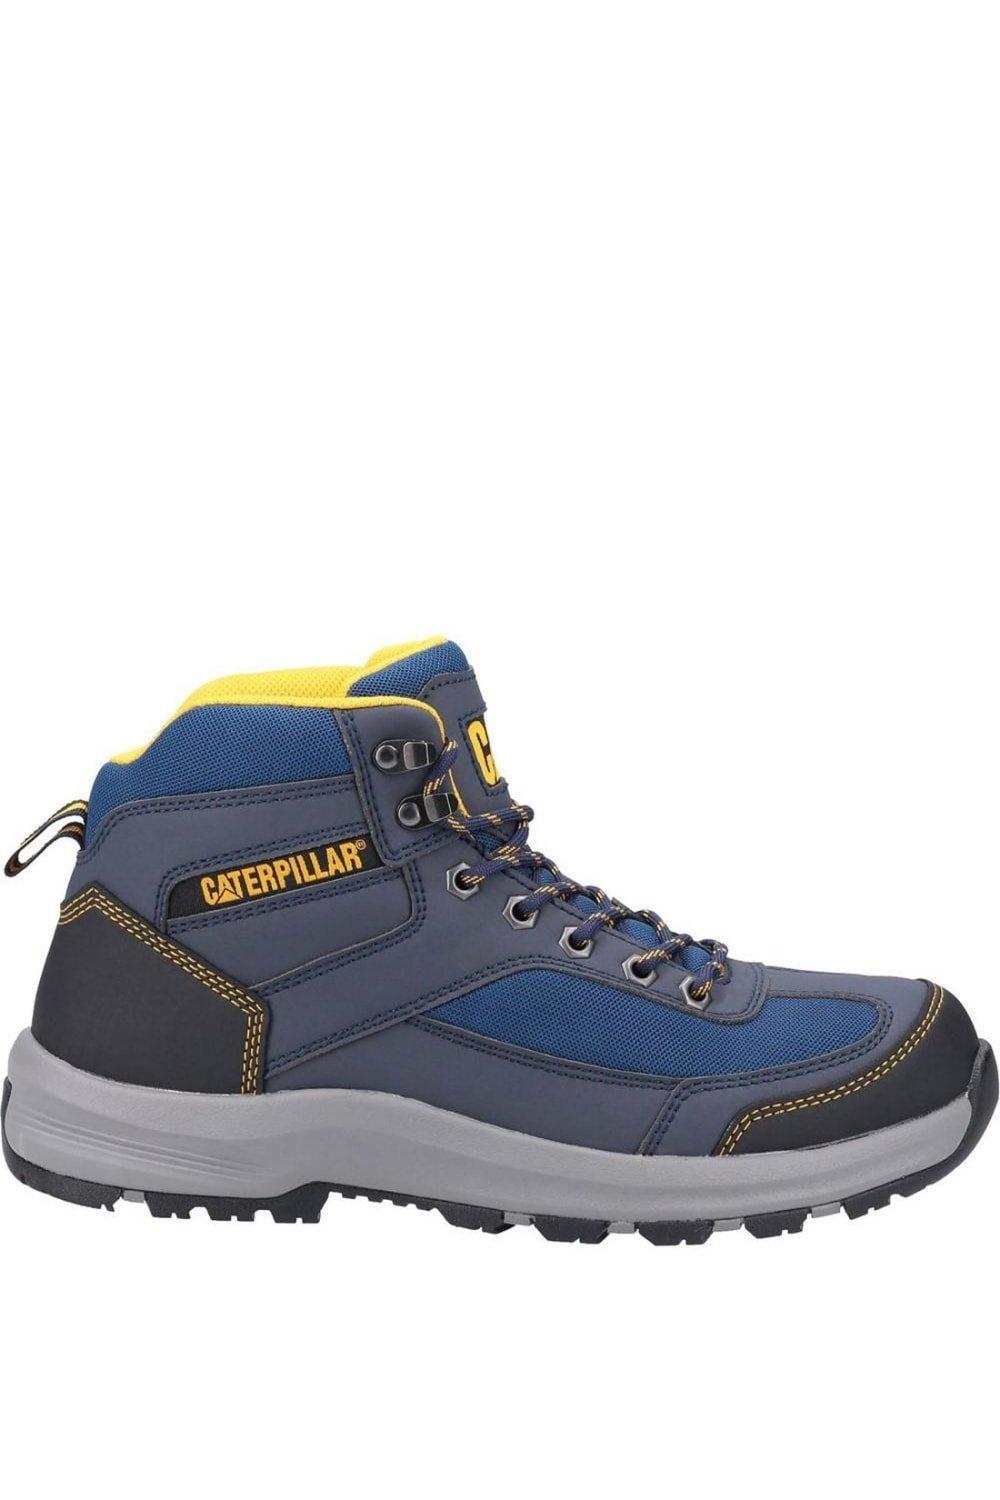 Защитные ботинки Элмора Caterpillar, темно-синий 1028 хl защита ног тхэквондо каратэ пу эва упаковка премиум пакет на кнопке